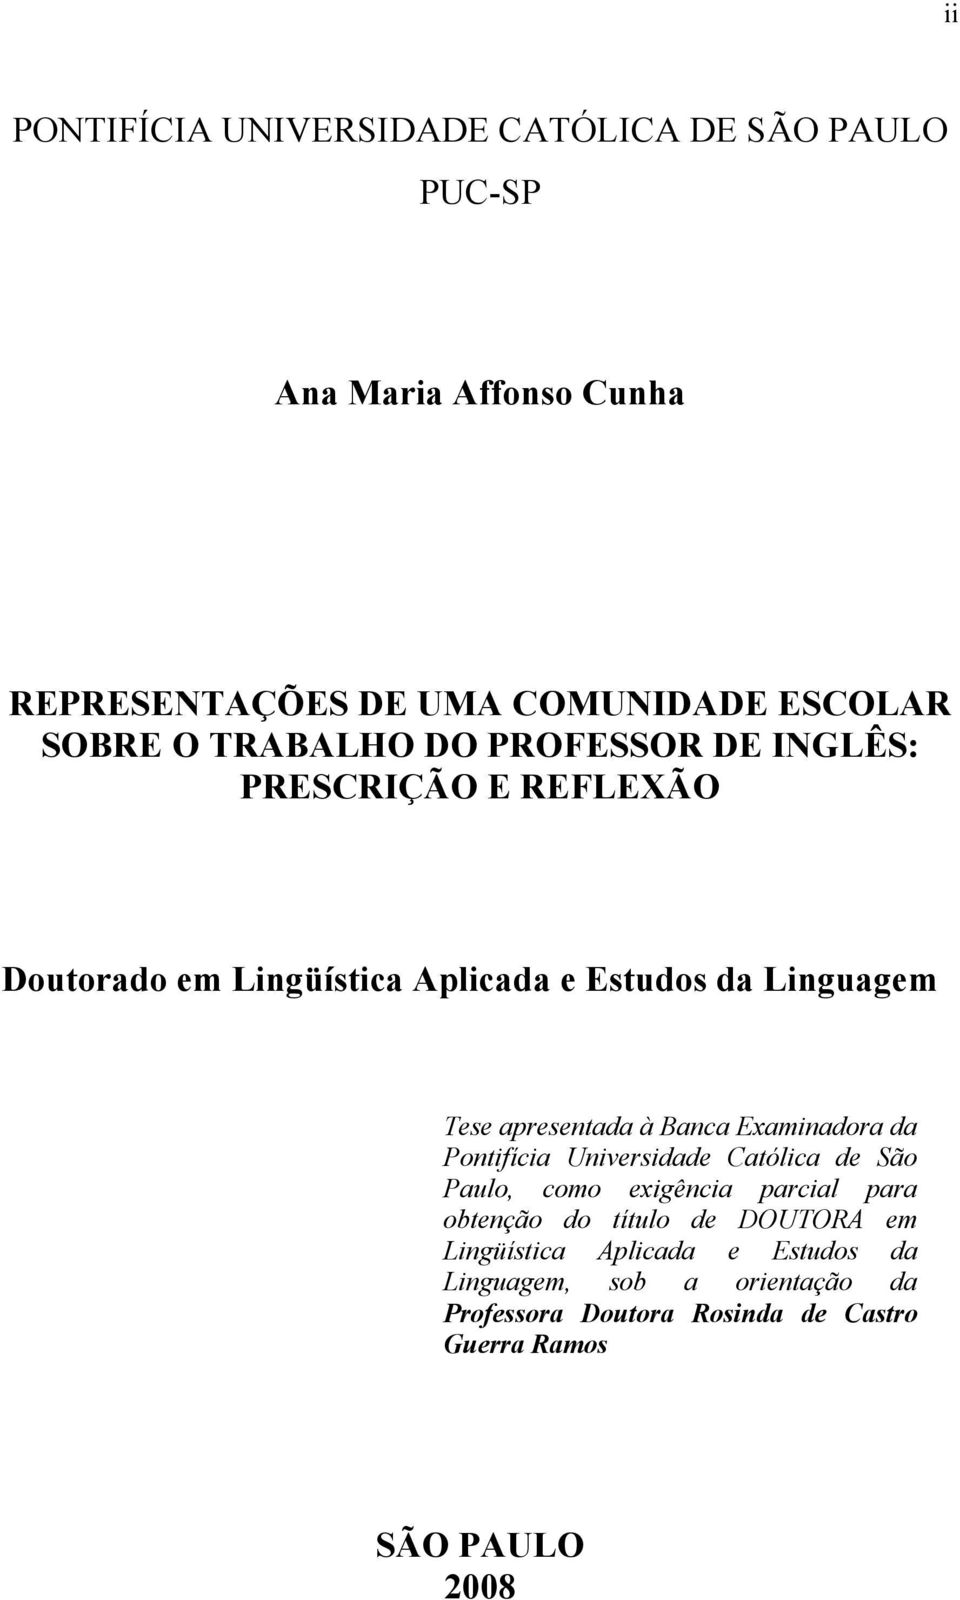 à Banca Examinadora da Pontifícia Universidade Católica de São Paulo, como exigência parcial para obtenção do título de DOUTORA